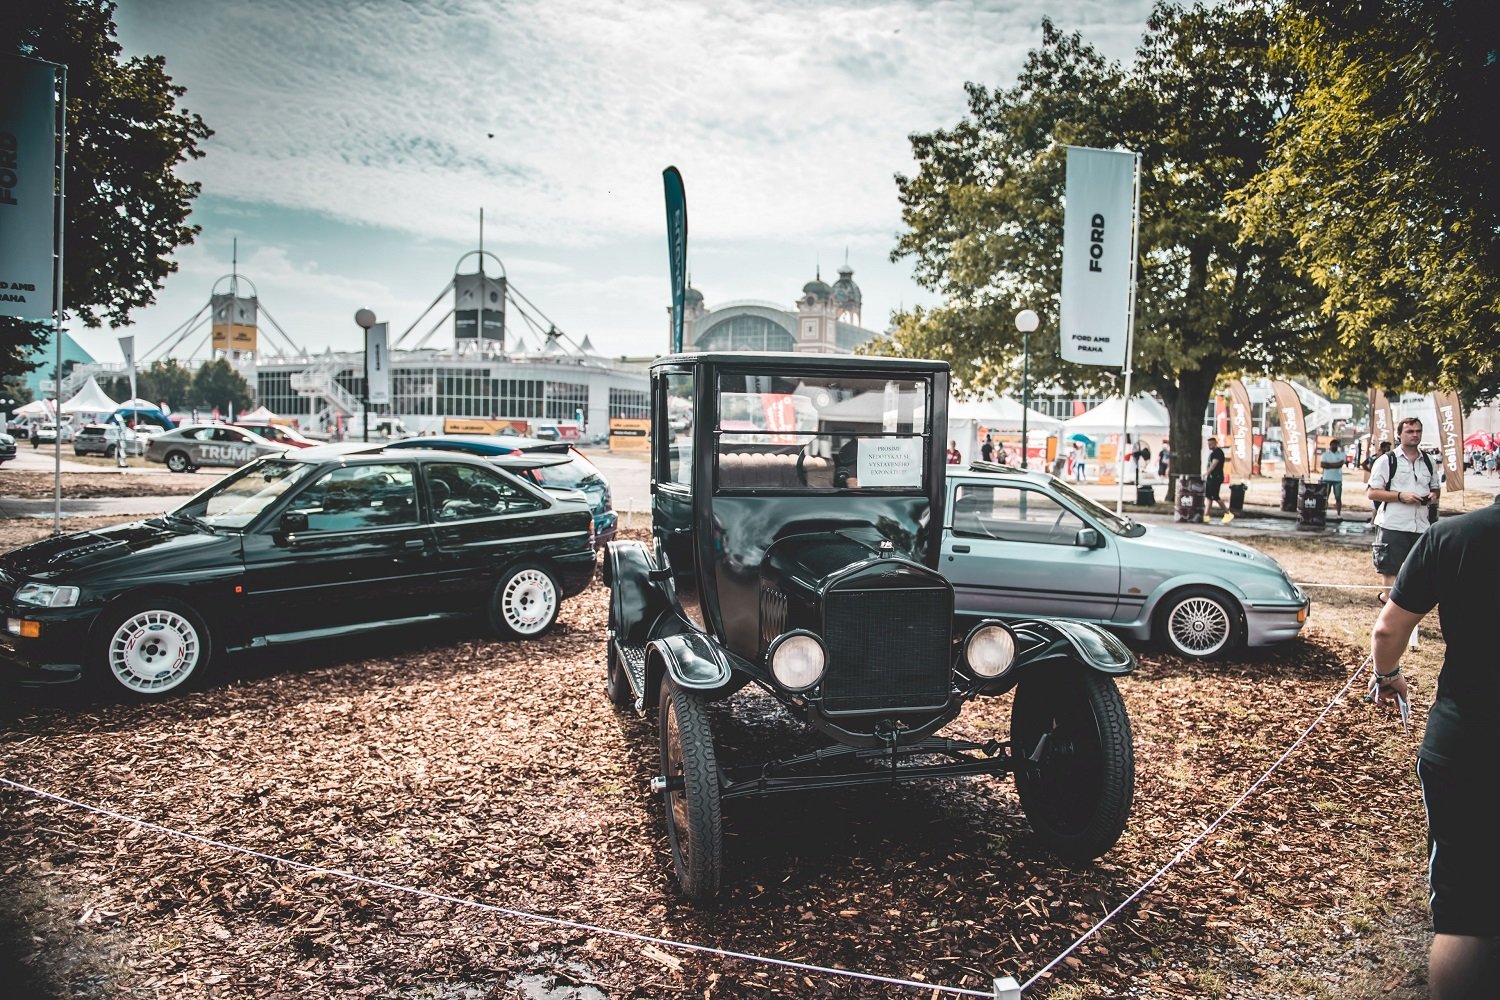 Automobilová slavnost LEGENDY 2019 s hlavním tématem Americké vozy se koná, stejně jako minulý rok, v celém areálu Výstaviště Praha v Holešovicích, nově však v termínu 17.- 19. května 2019.